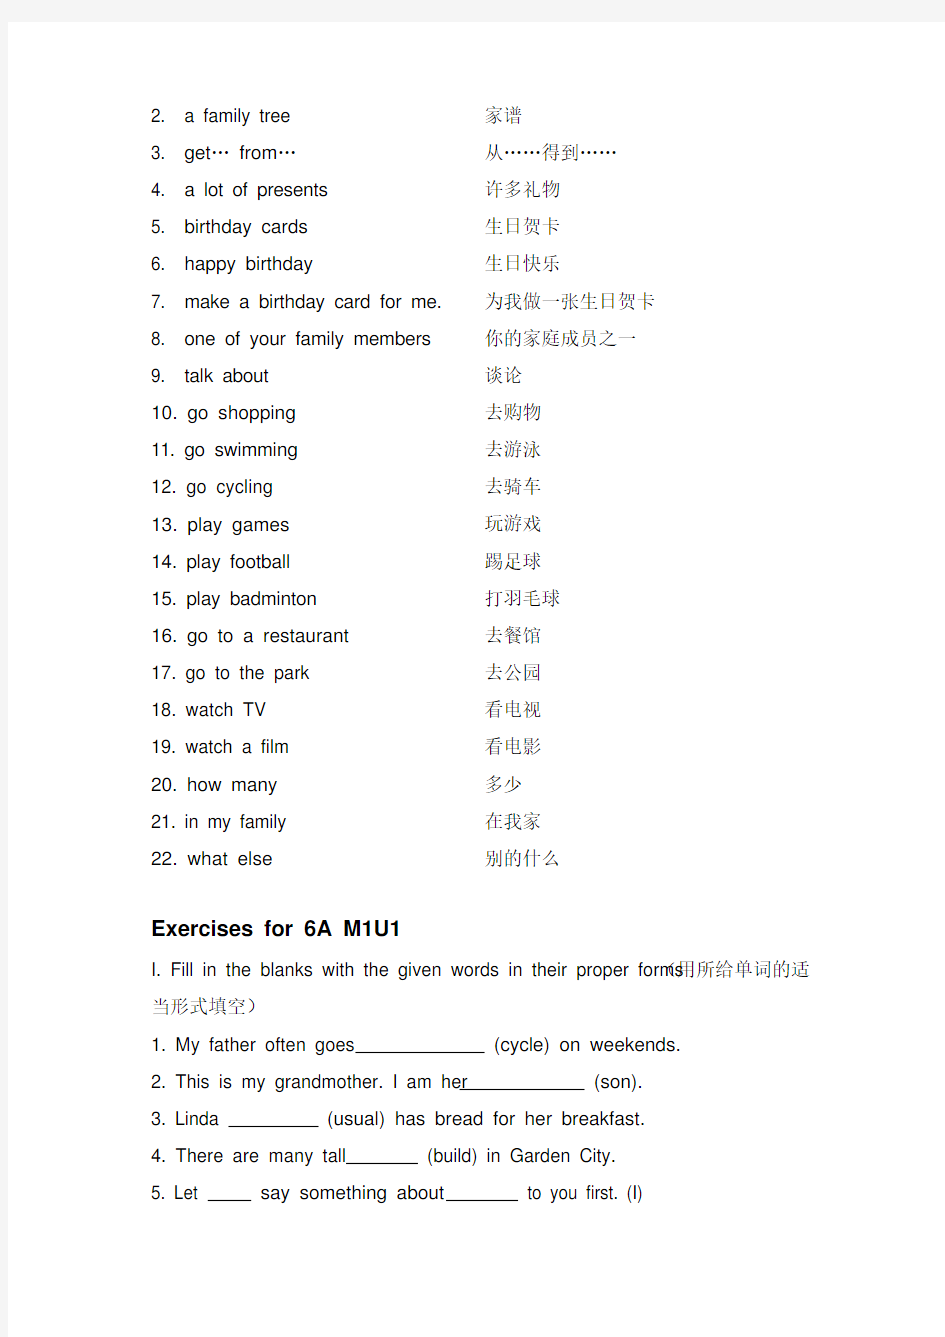 上海版牛津英语6AUnit1Familyandrelatives单词词组语法和练习题